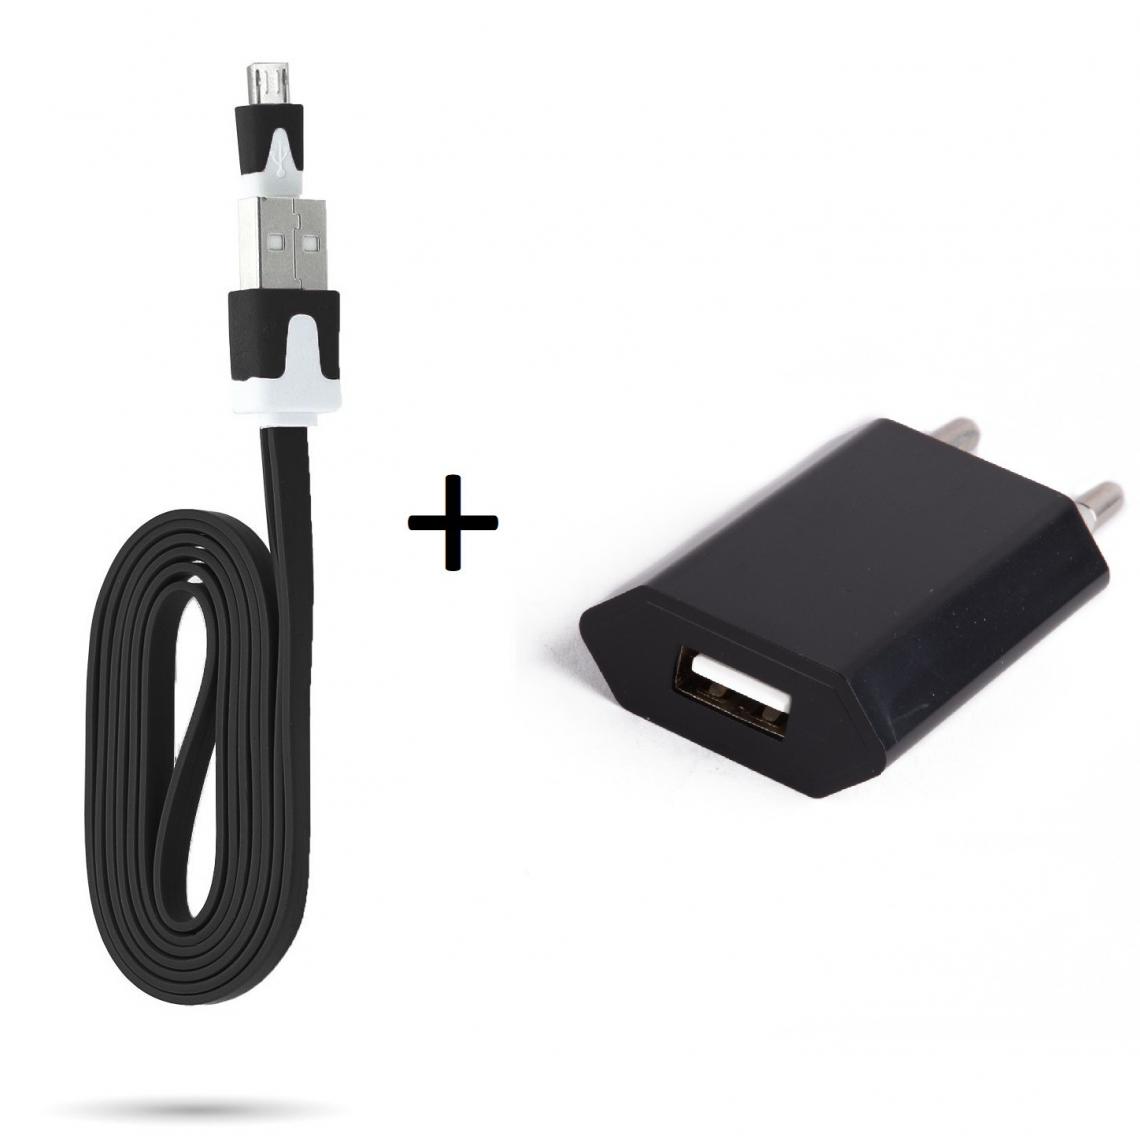 Shot - Cable Noodle 1m Chargeur + Prise Secteur pour WIKO View 3 Lite Smartphone Micro USB Murale Pack Android (NOIR) - Chargeur secteur téléphone